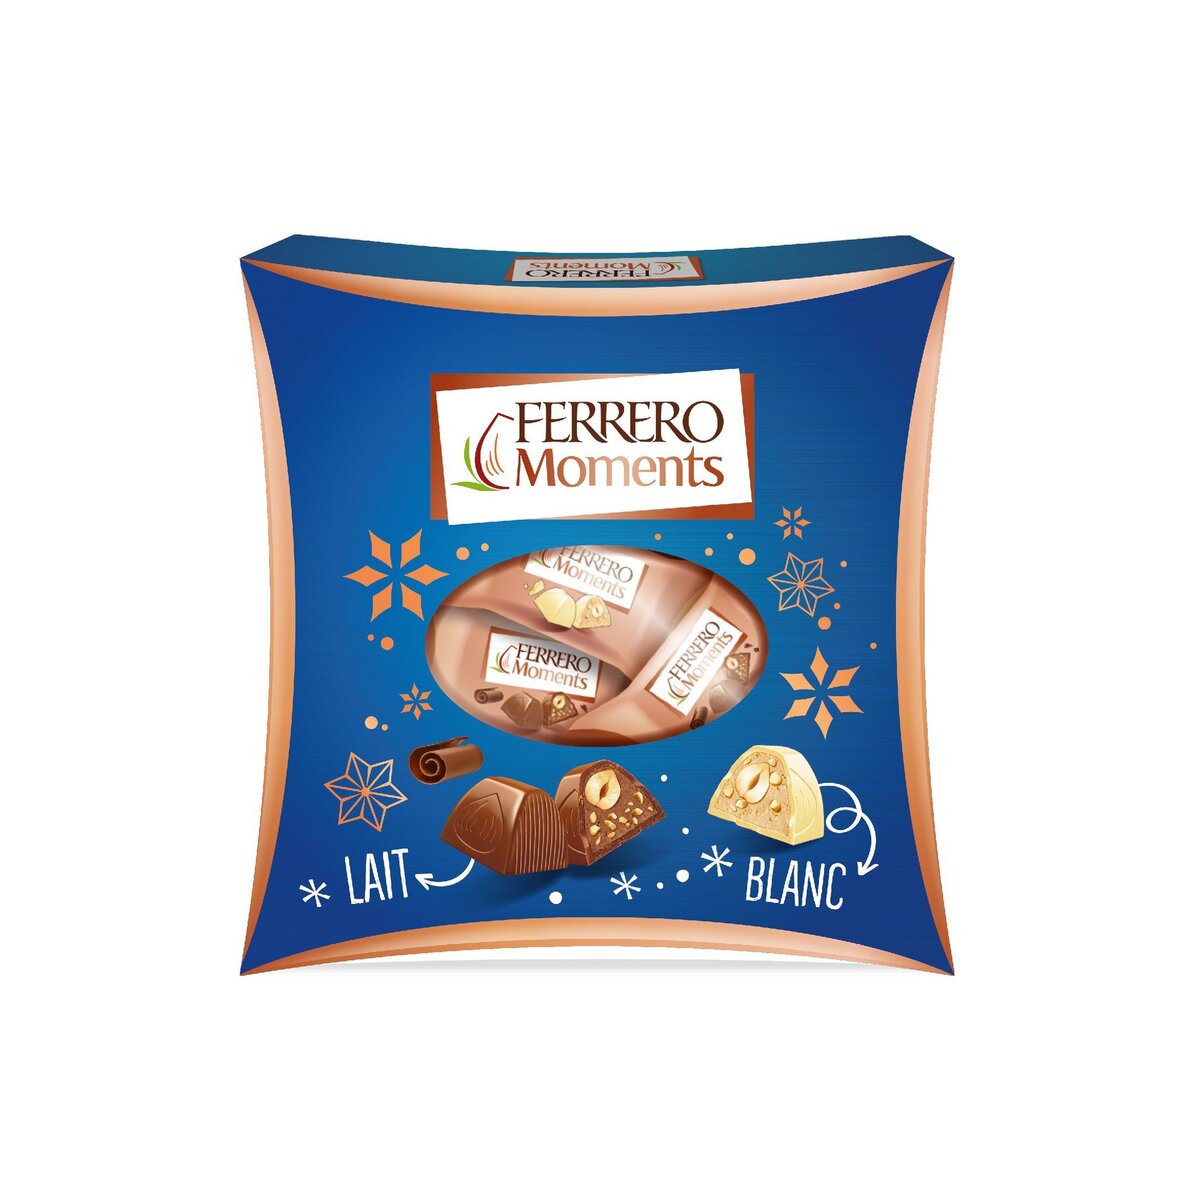 FERRERO Moments Assortiment de chocolats au lait et blanc 21 pièces 190g